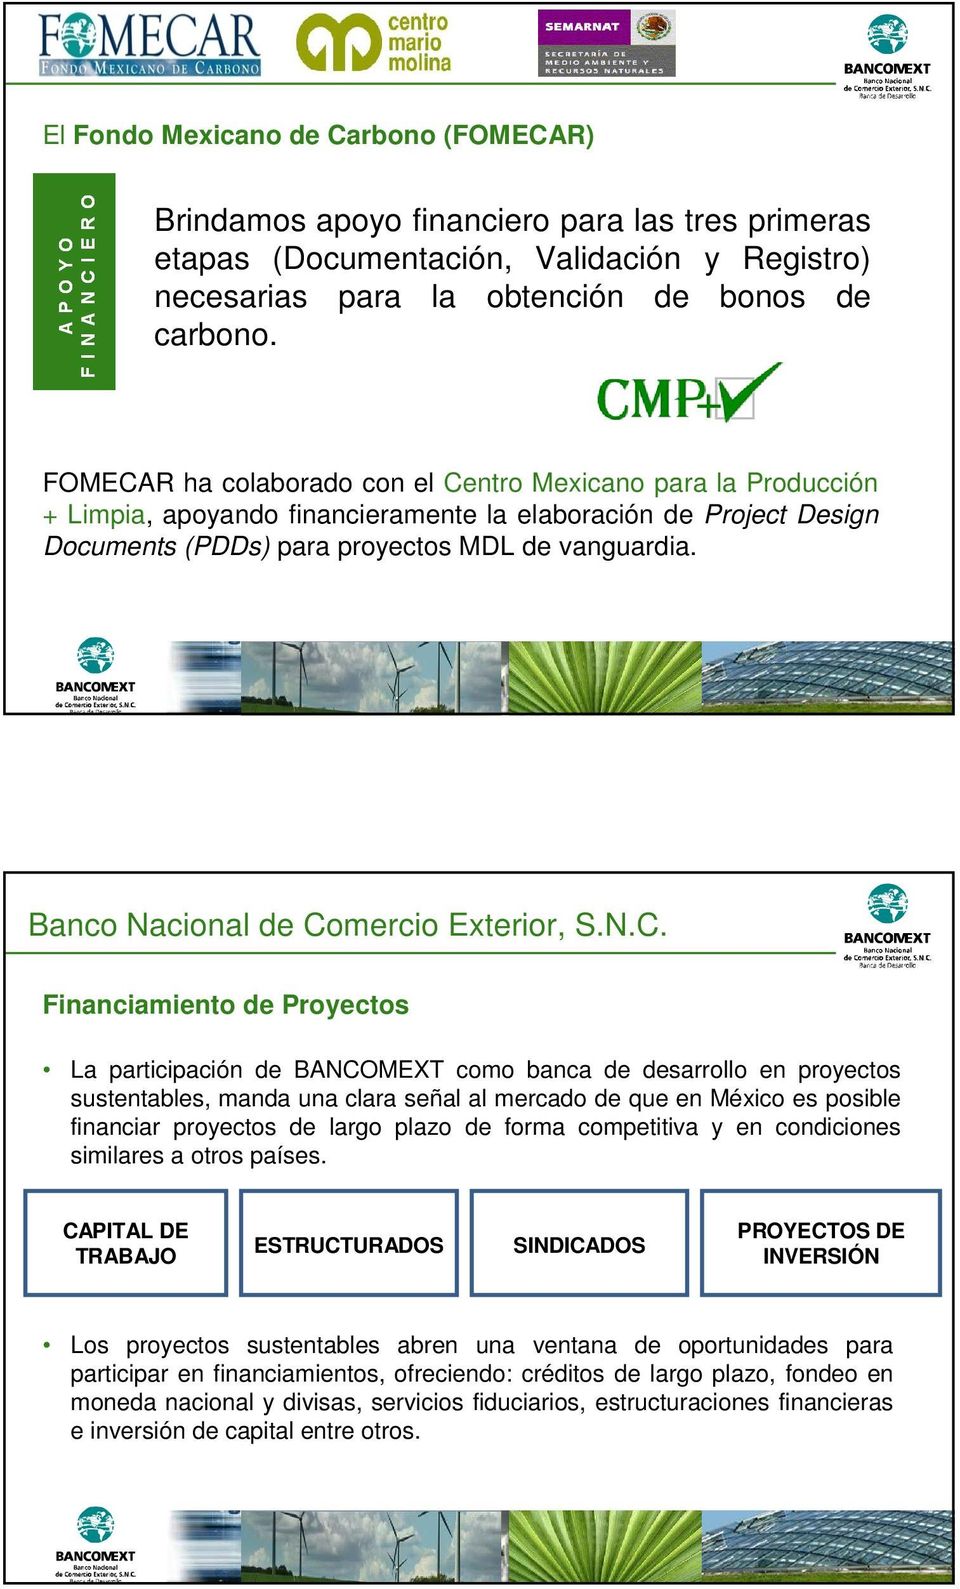 Financiamiento de Proyectos La participación de BANCOMEXT como banca de desarrollo en proyectos sustentables, manda una clara señal al mercado de que en México es posible financiar proyectos de largo